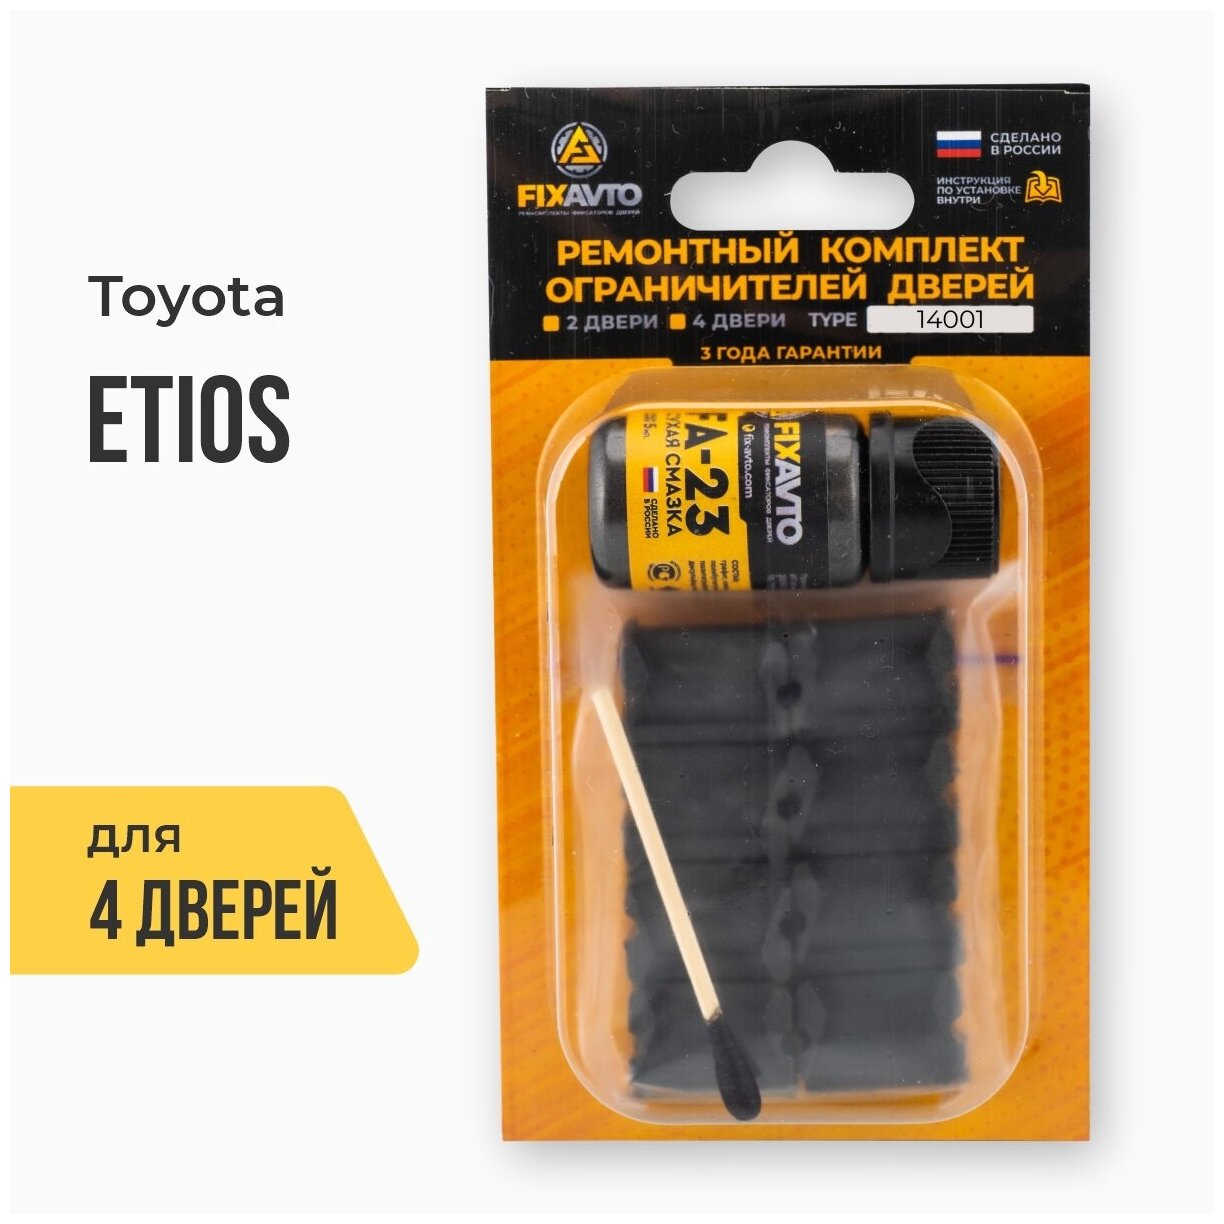 Ремкомплект ограничителей на 4 двери Toyota ETIOS Кузов: 1# Г. в: 2010-2017 TYPE 14001 Тип 1